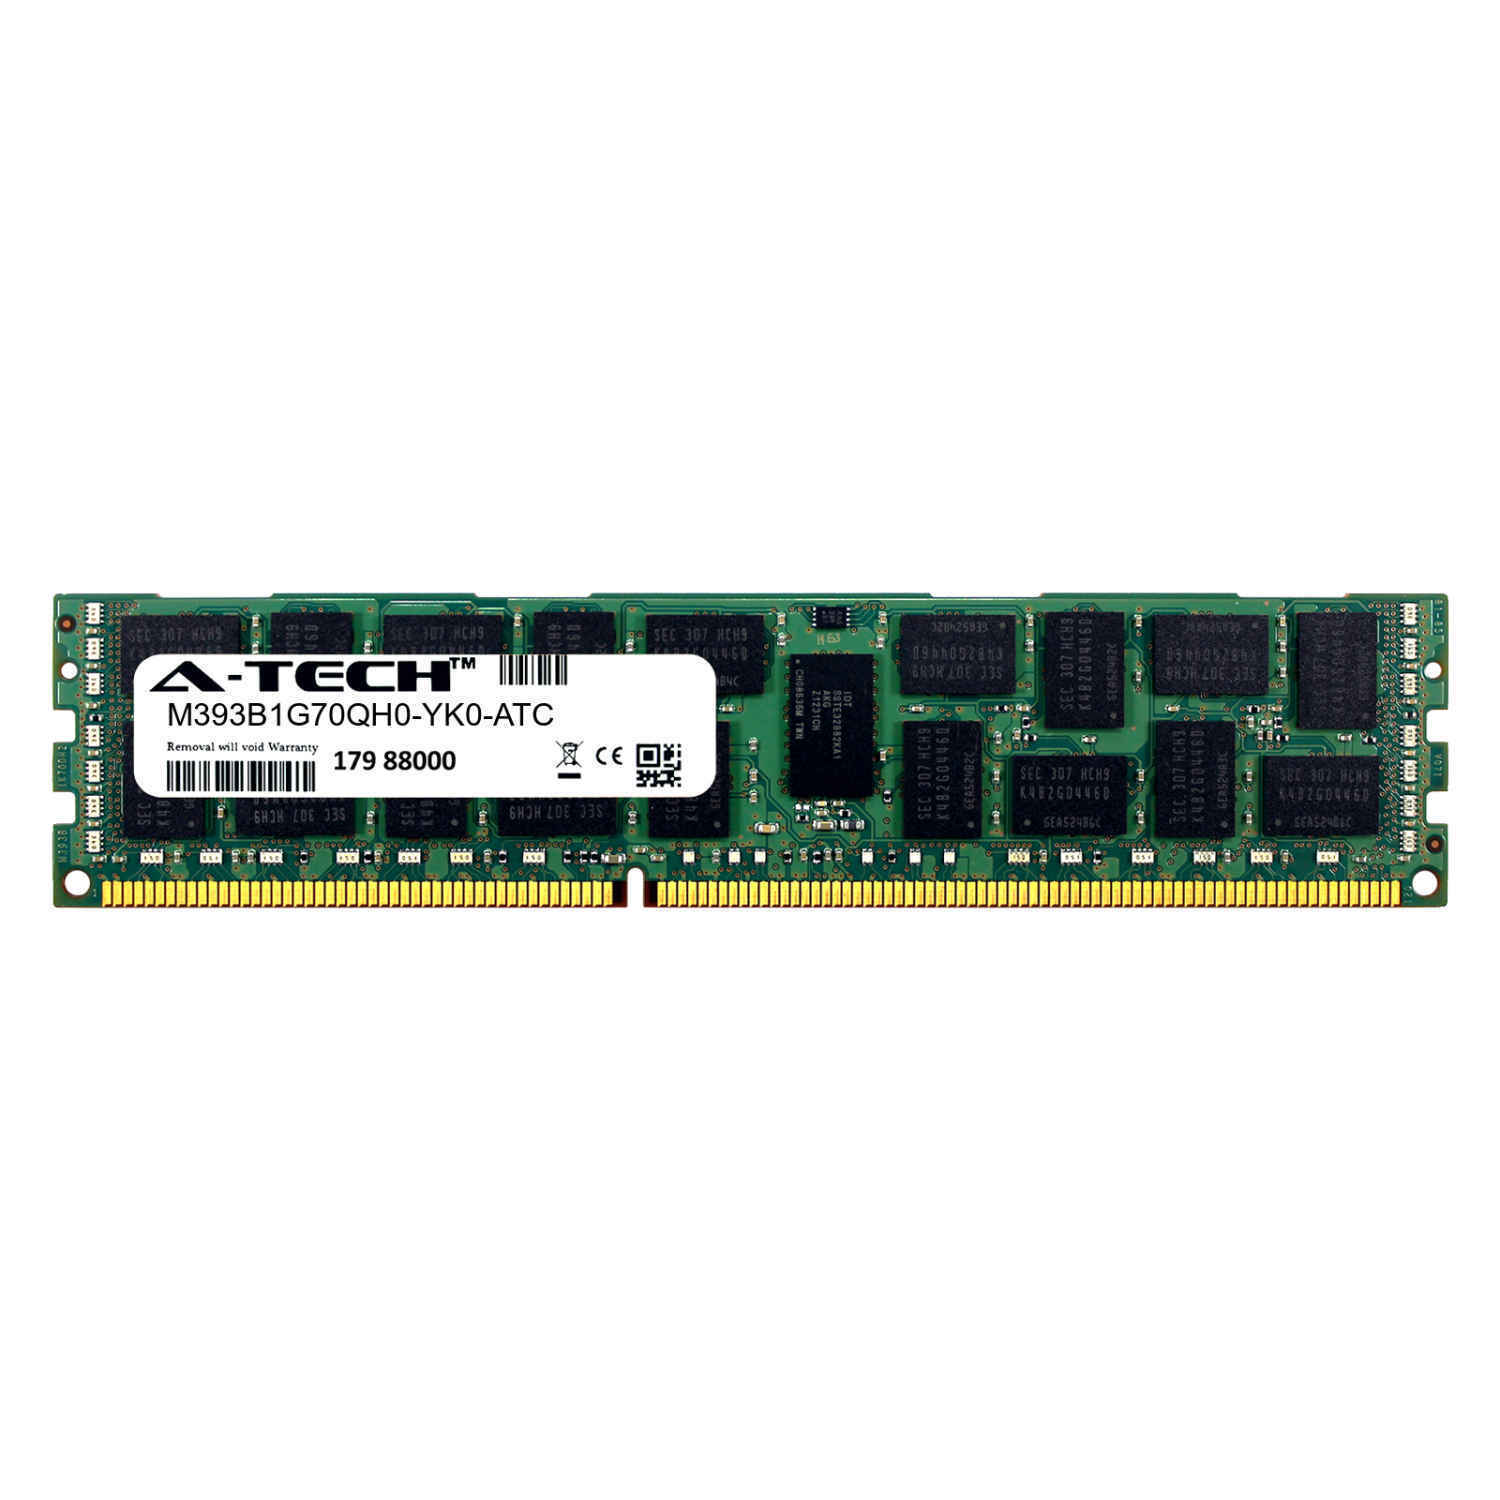 8GB DDR3 PC3-12800 RDIMM (Samsung M393B1G70QH0-YK0 Equivalent) Server Memory RAM